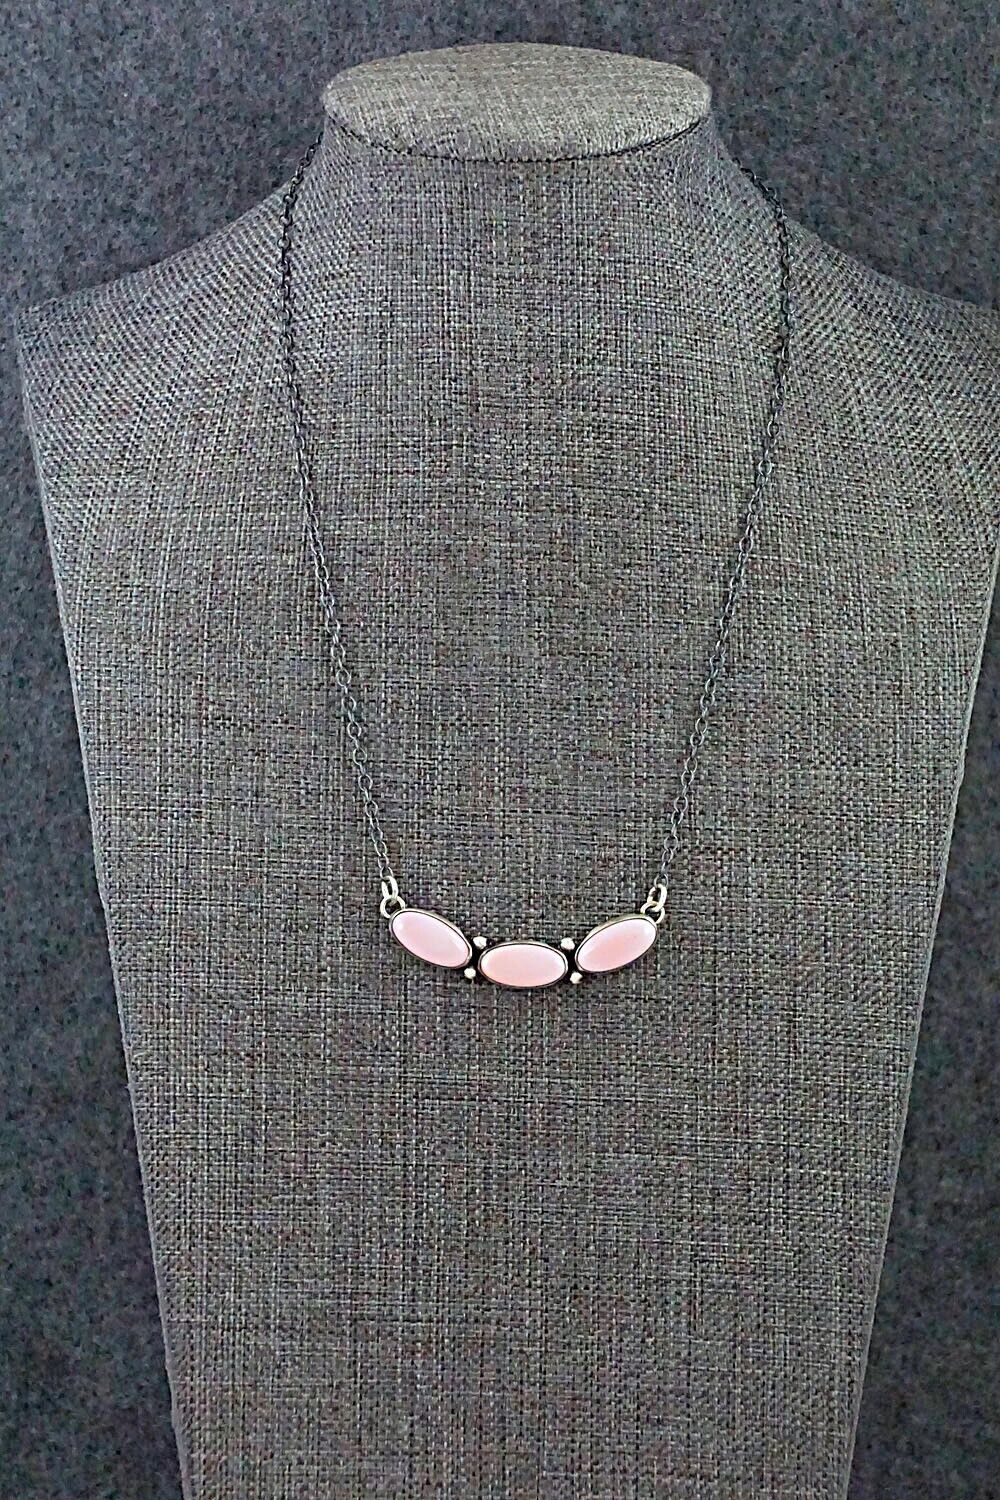 Pink Conch Shell & Sterling Silver Necklace - Loretta Delgarito